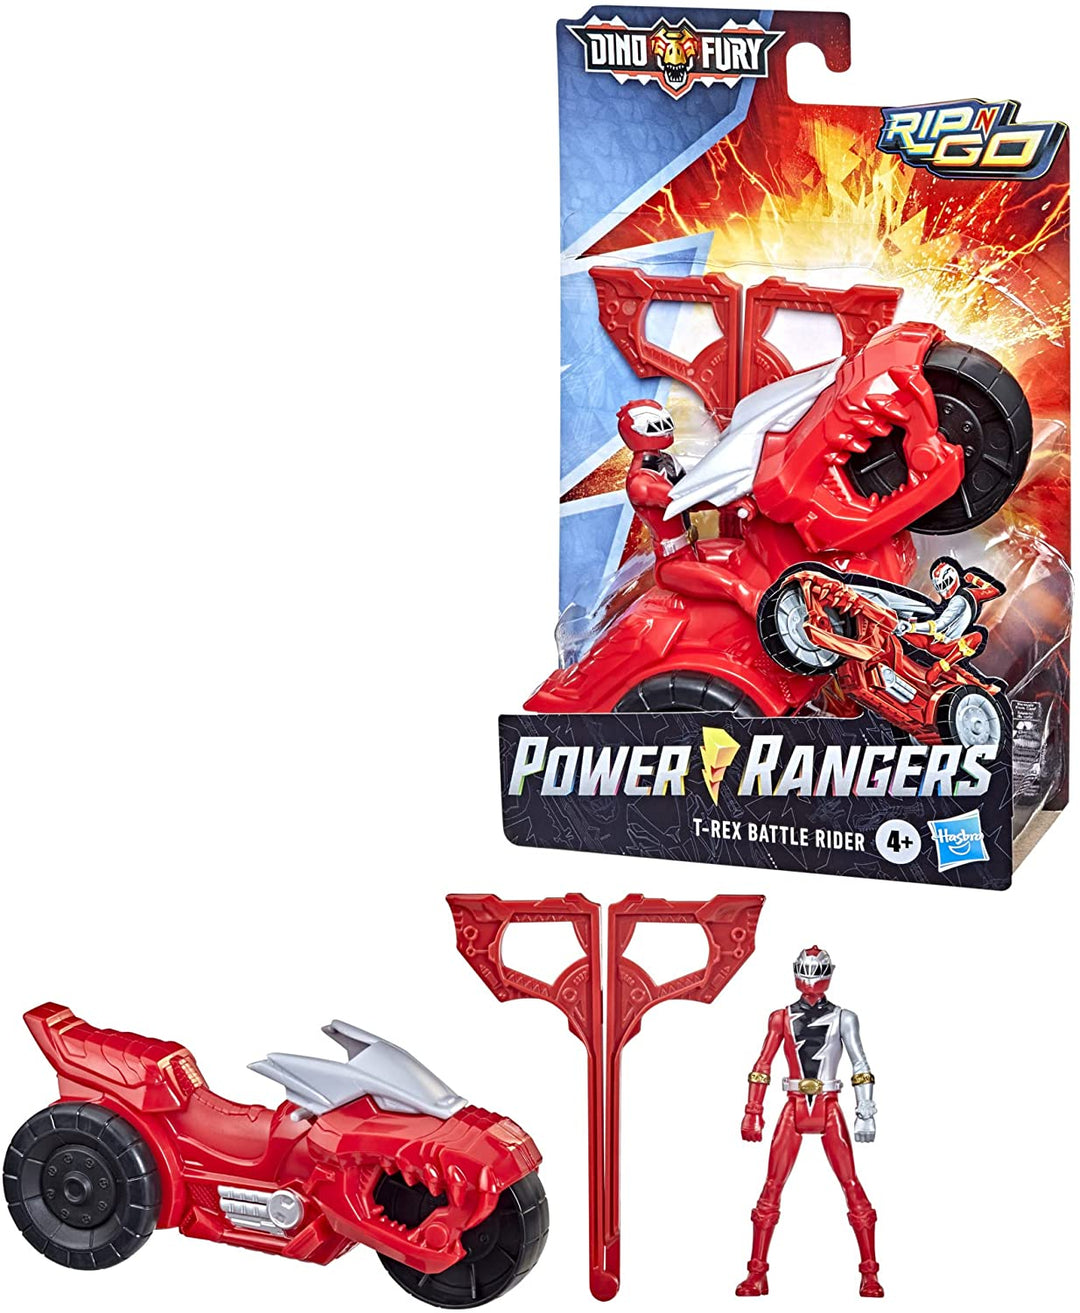 Power Rangers Dino Fury Rip N Go T-Rex Battle Rider und Dino Fury Red Ranger 15-